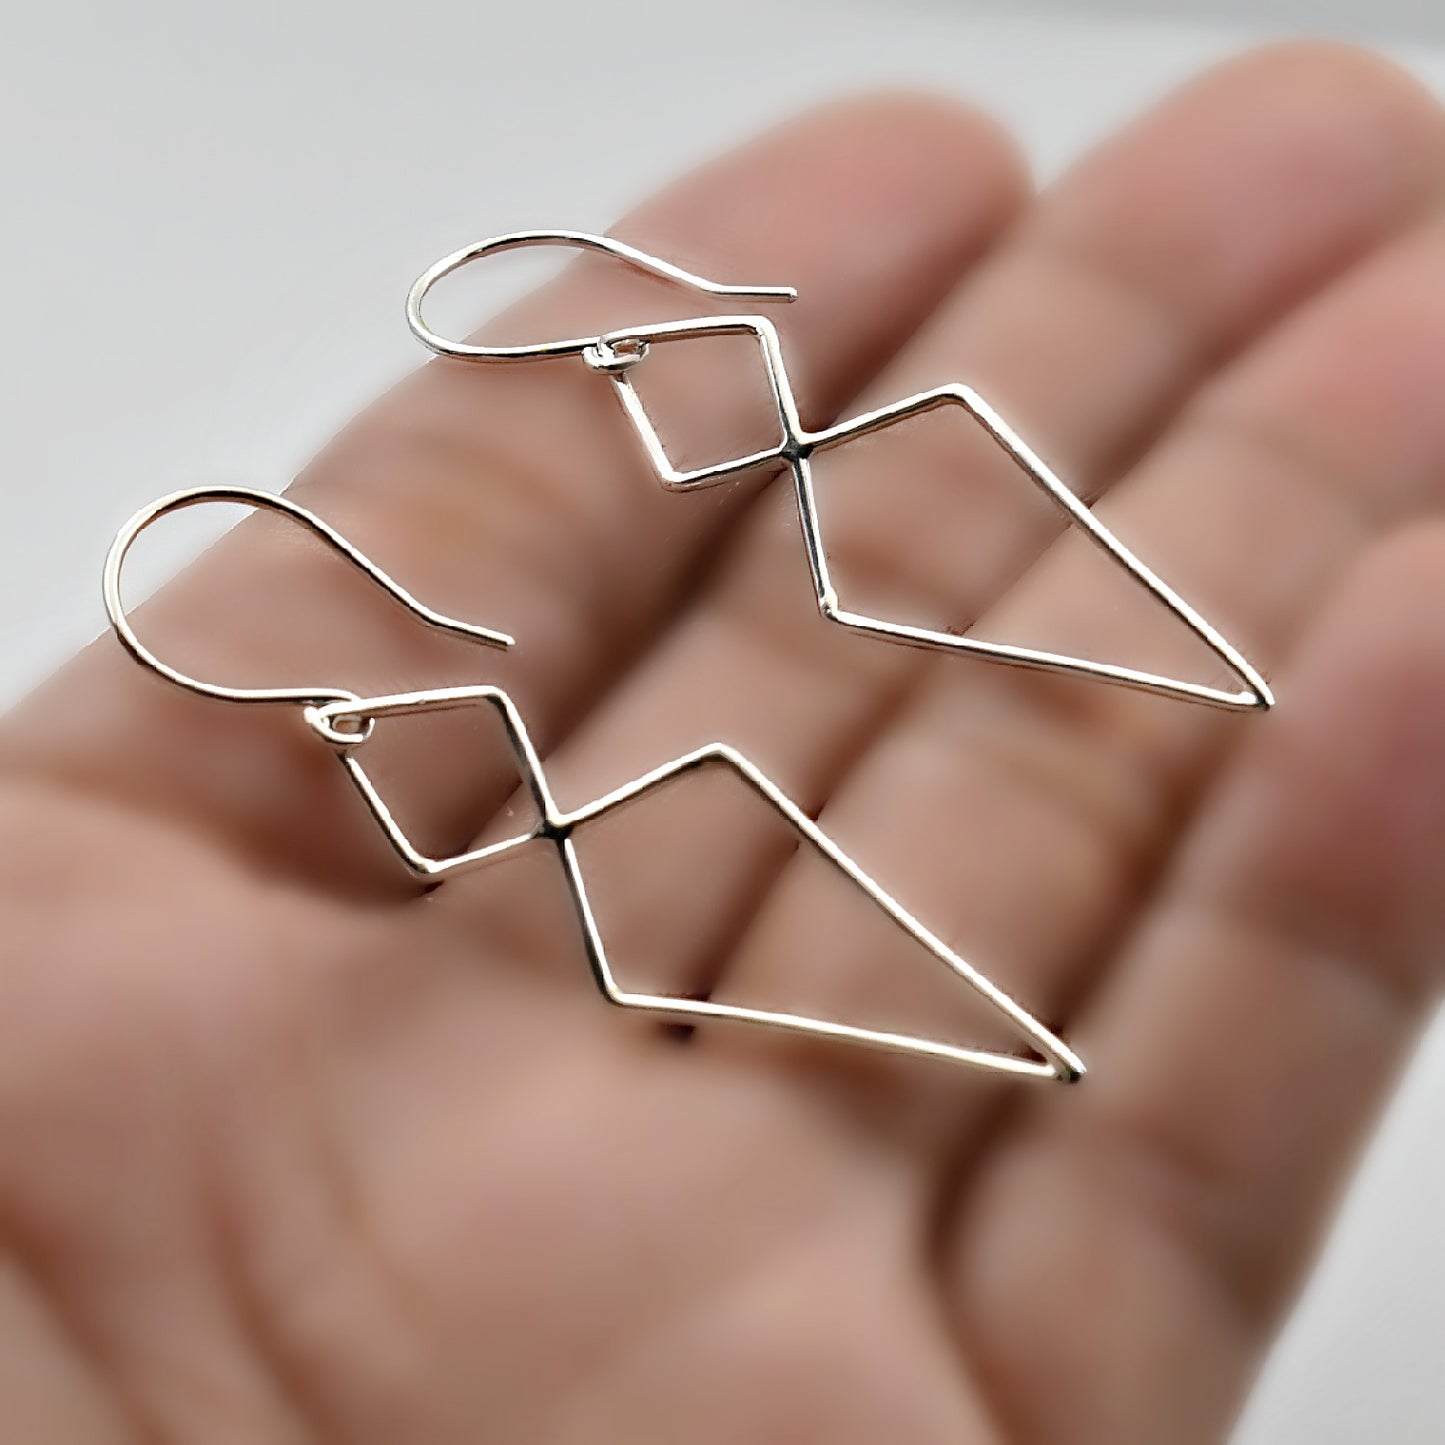 Sterling Silver Double Diamond Link Earrings -- EF0079